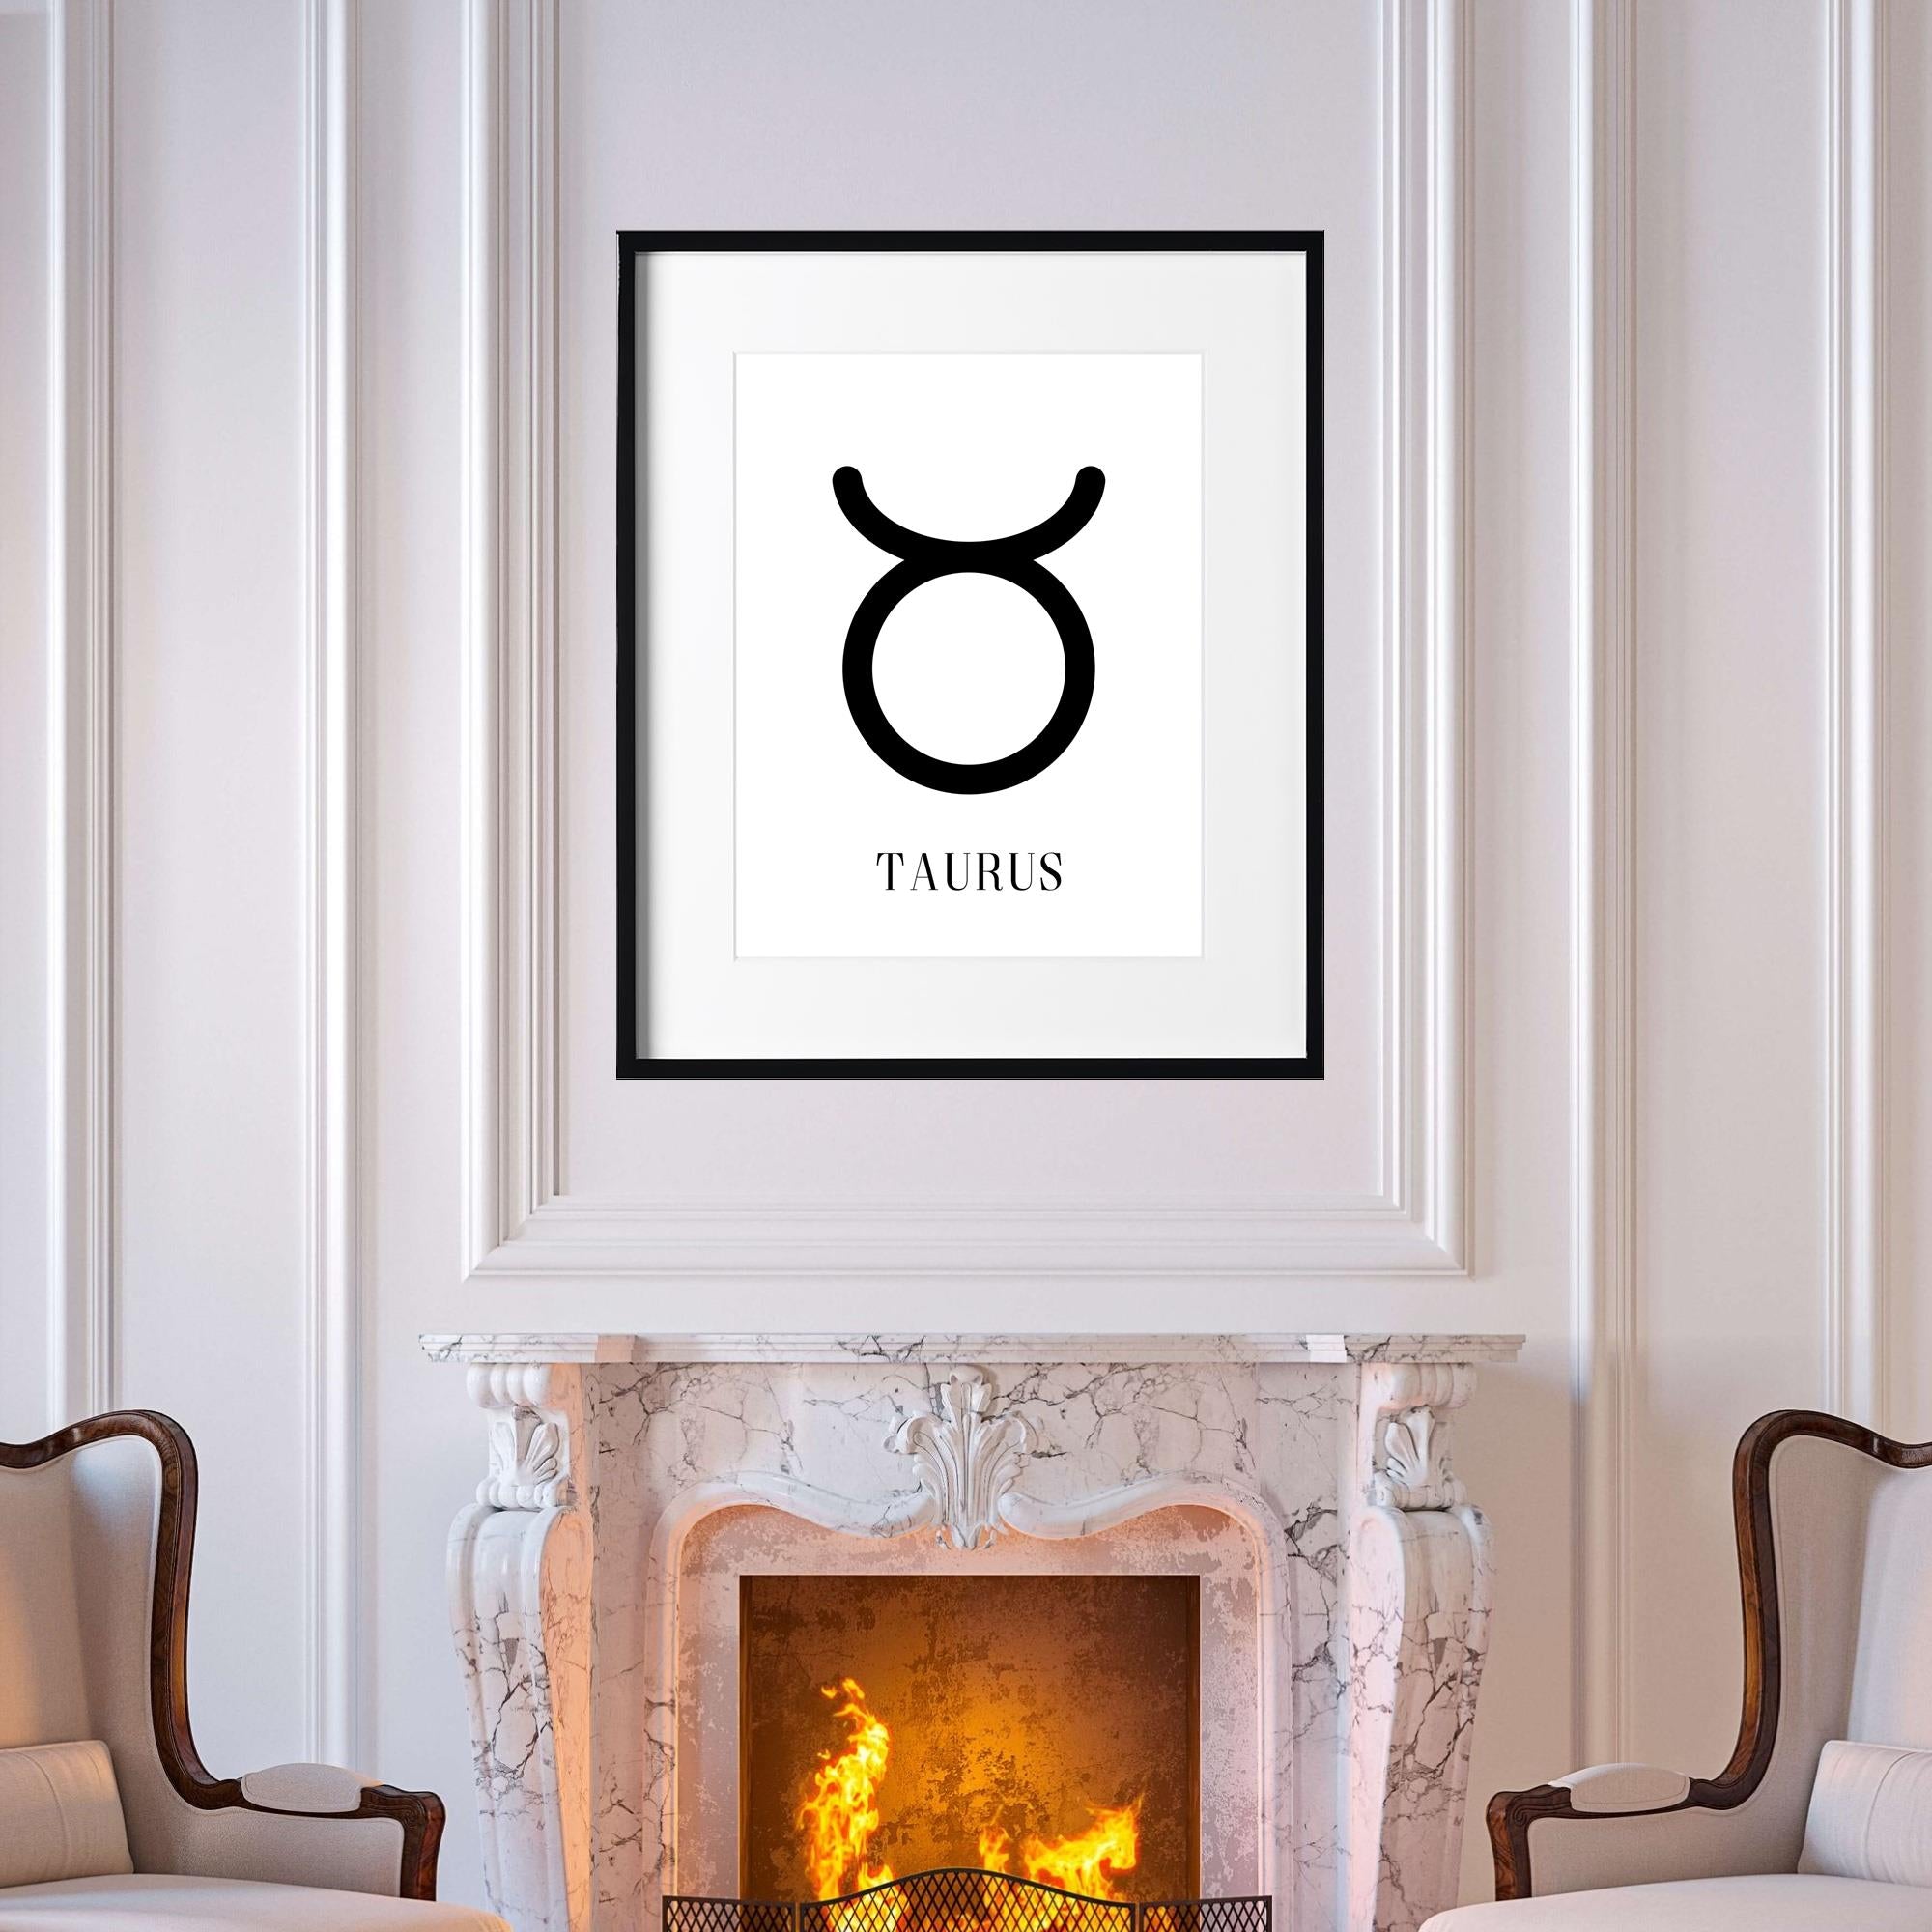 Taurus Zodiac Sign, Fine Art Print, Wall Art, Home Décor, Minimalist